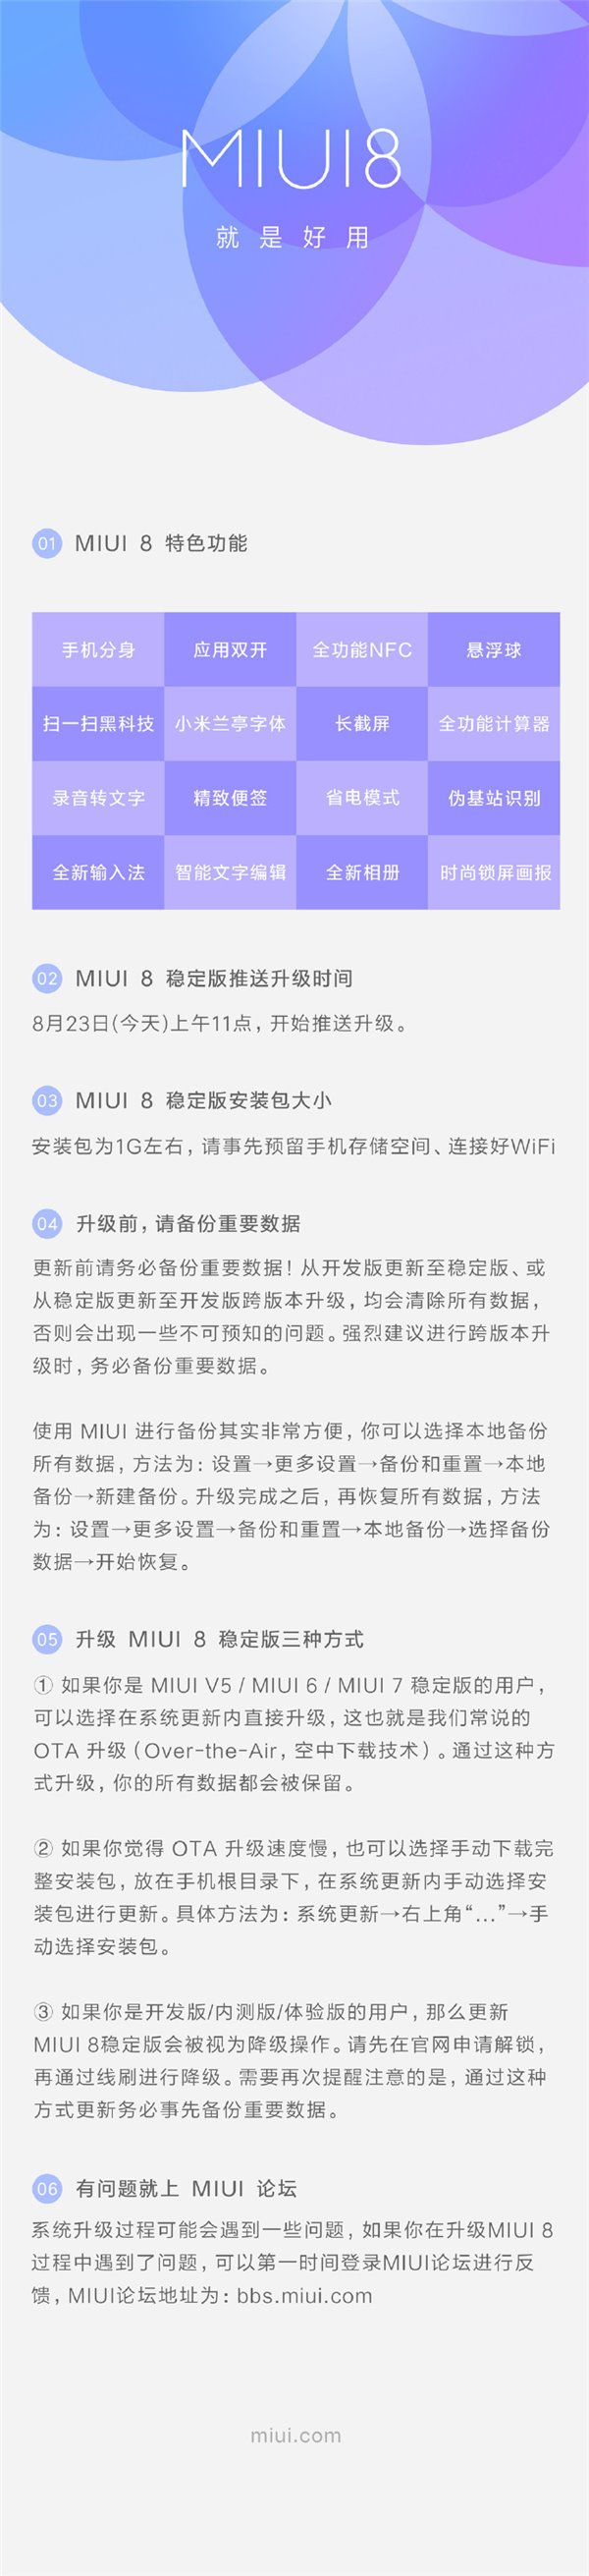 小米MIUI8稳定版怎么升级 小米MIUI8稳定版刷机教程介绍